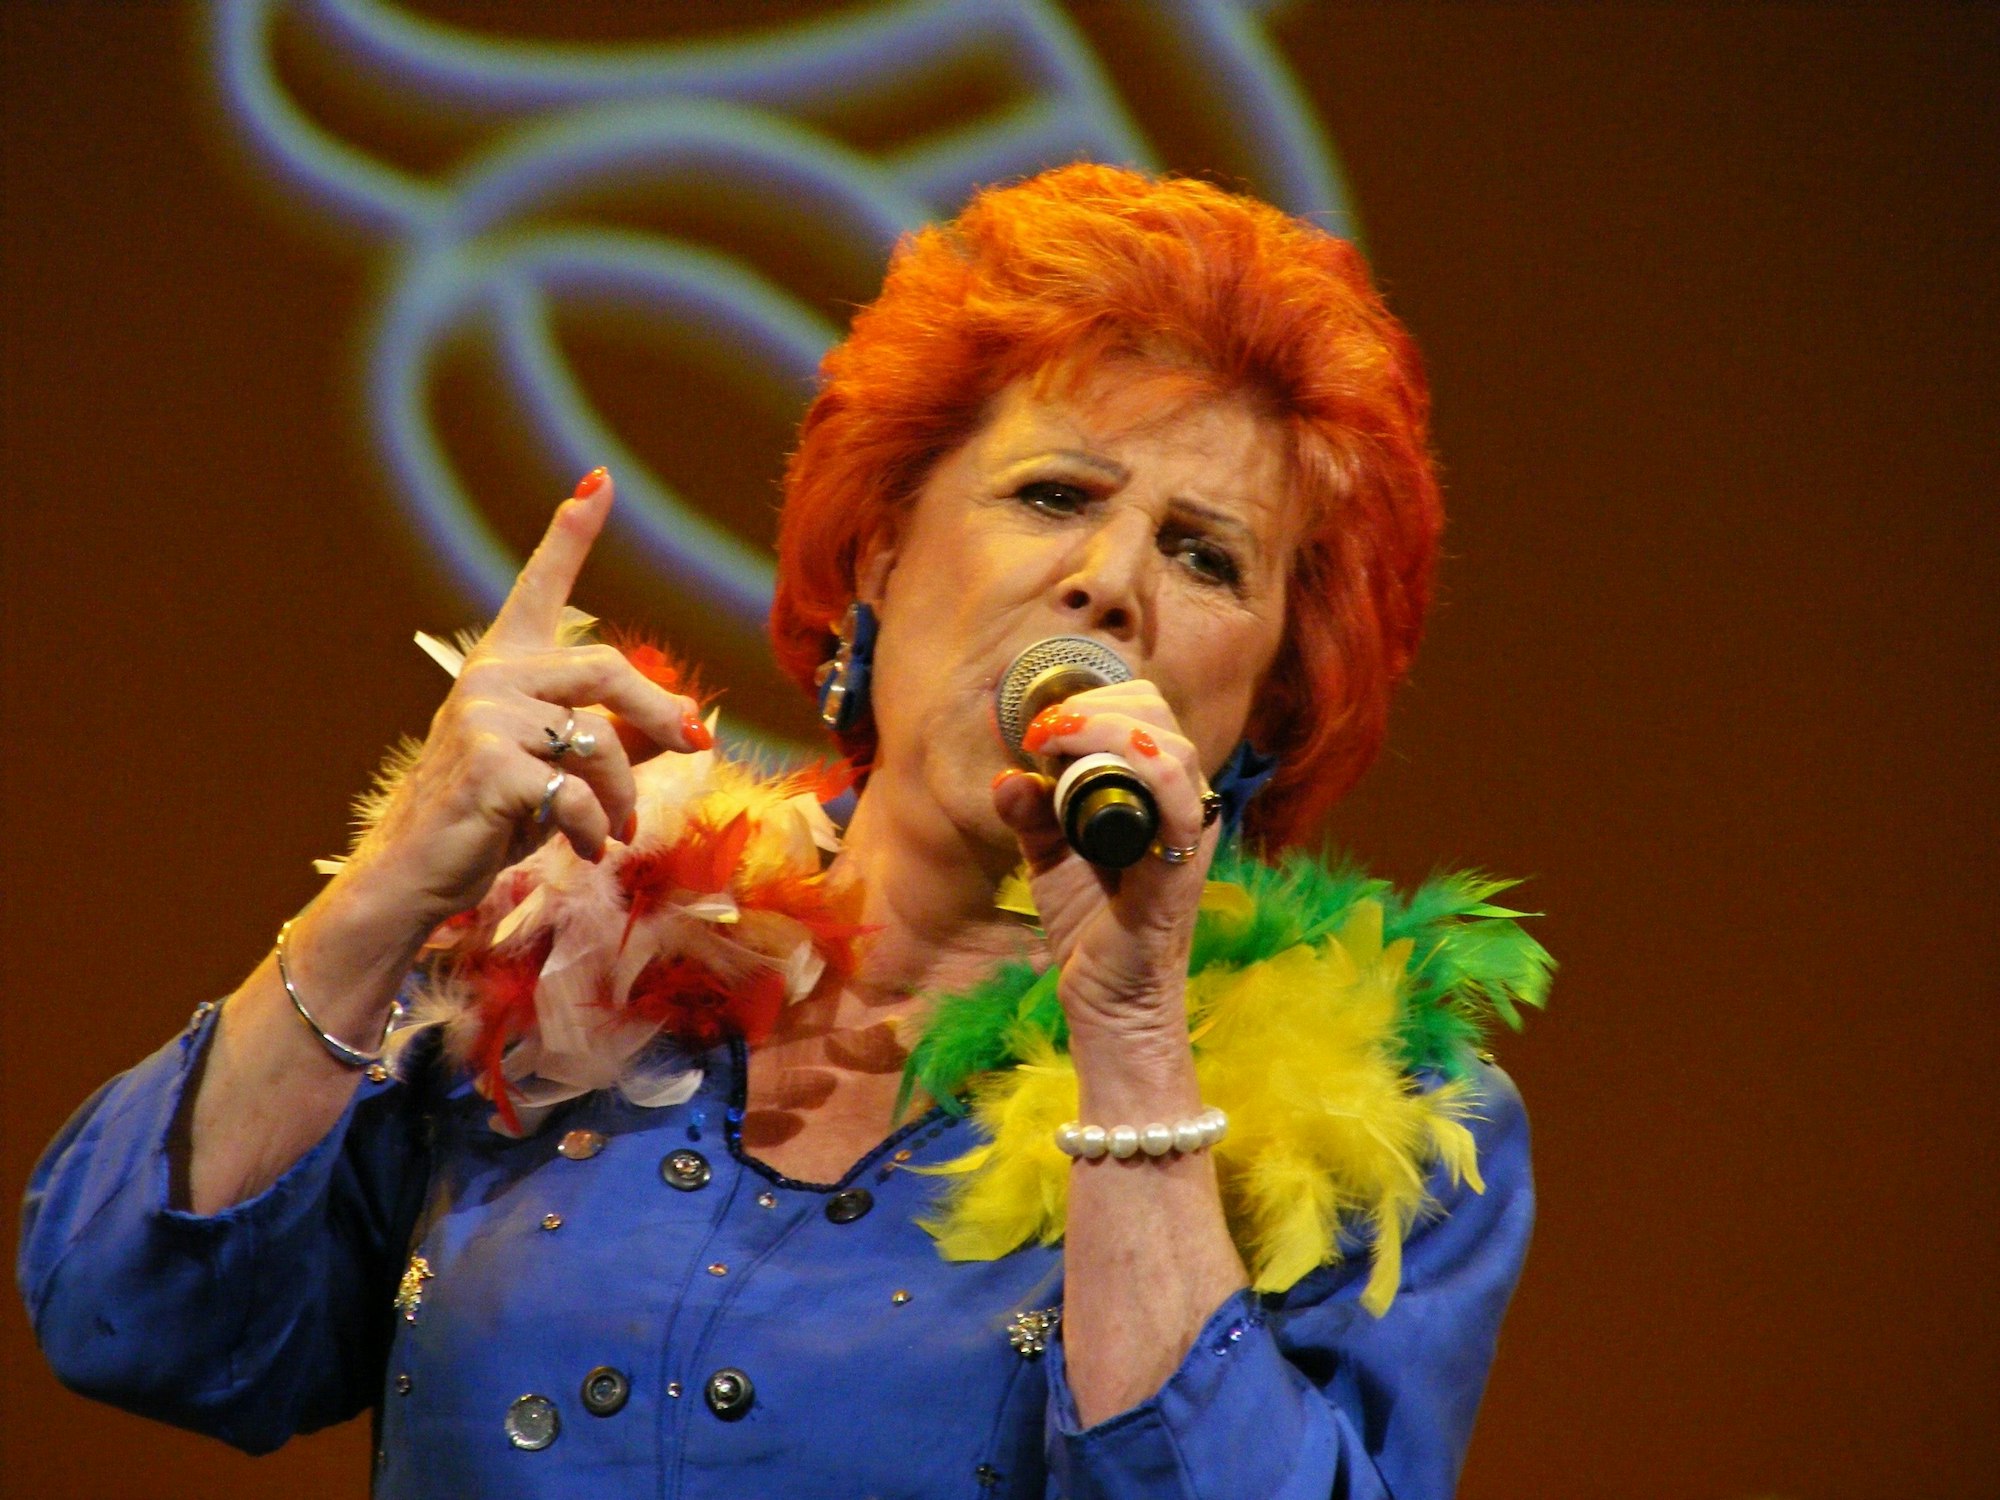 Marie-Luise Nikuta singt auf der Bühne.